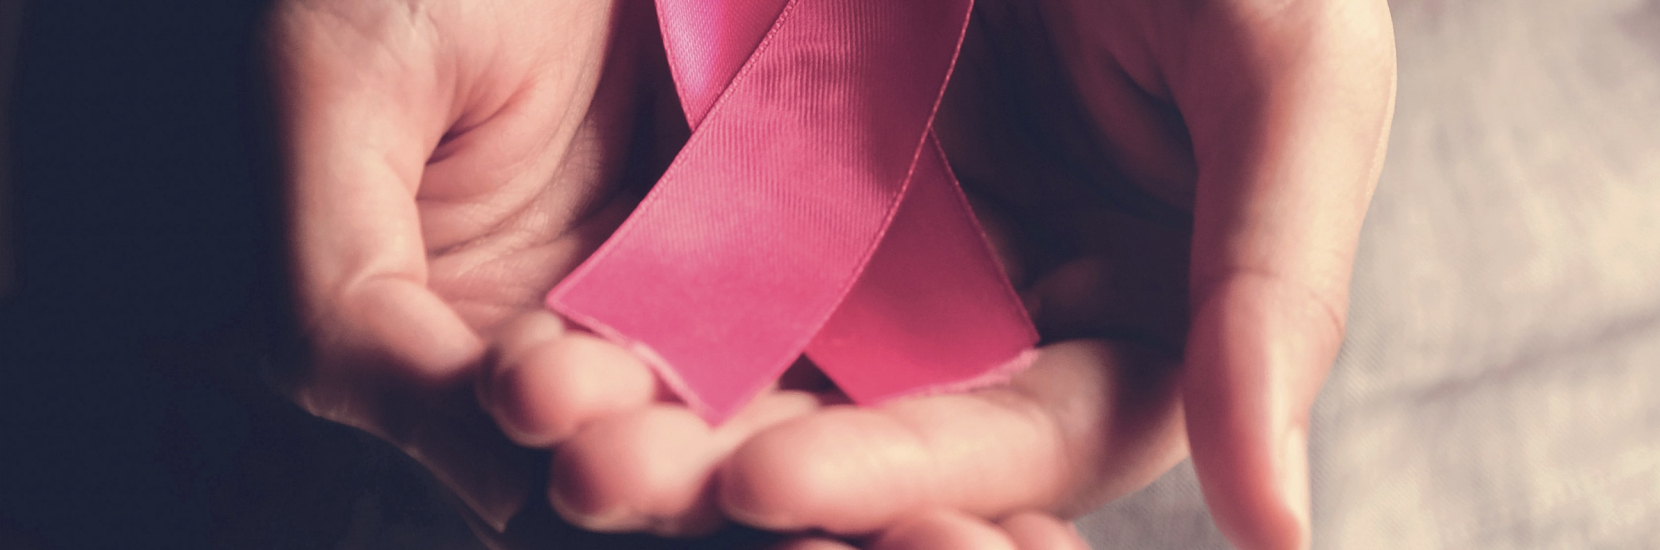 4 idées reçues sur le sport en cas de cancer du sein